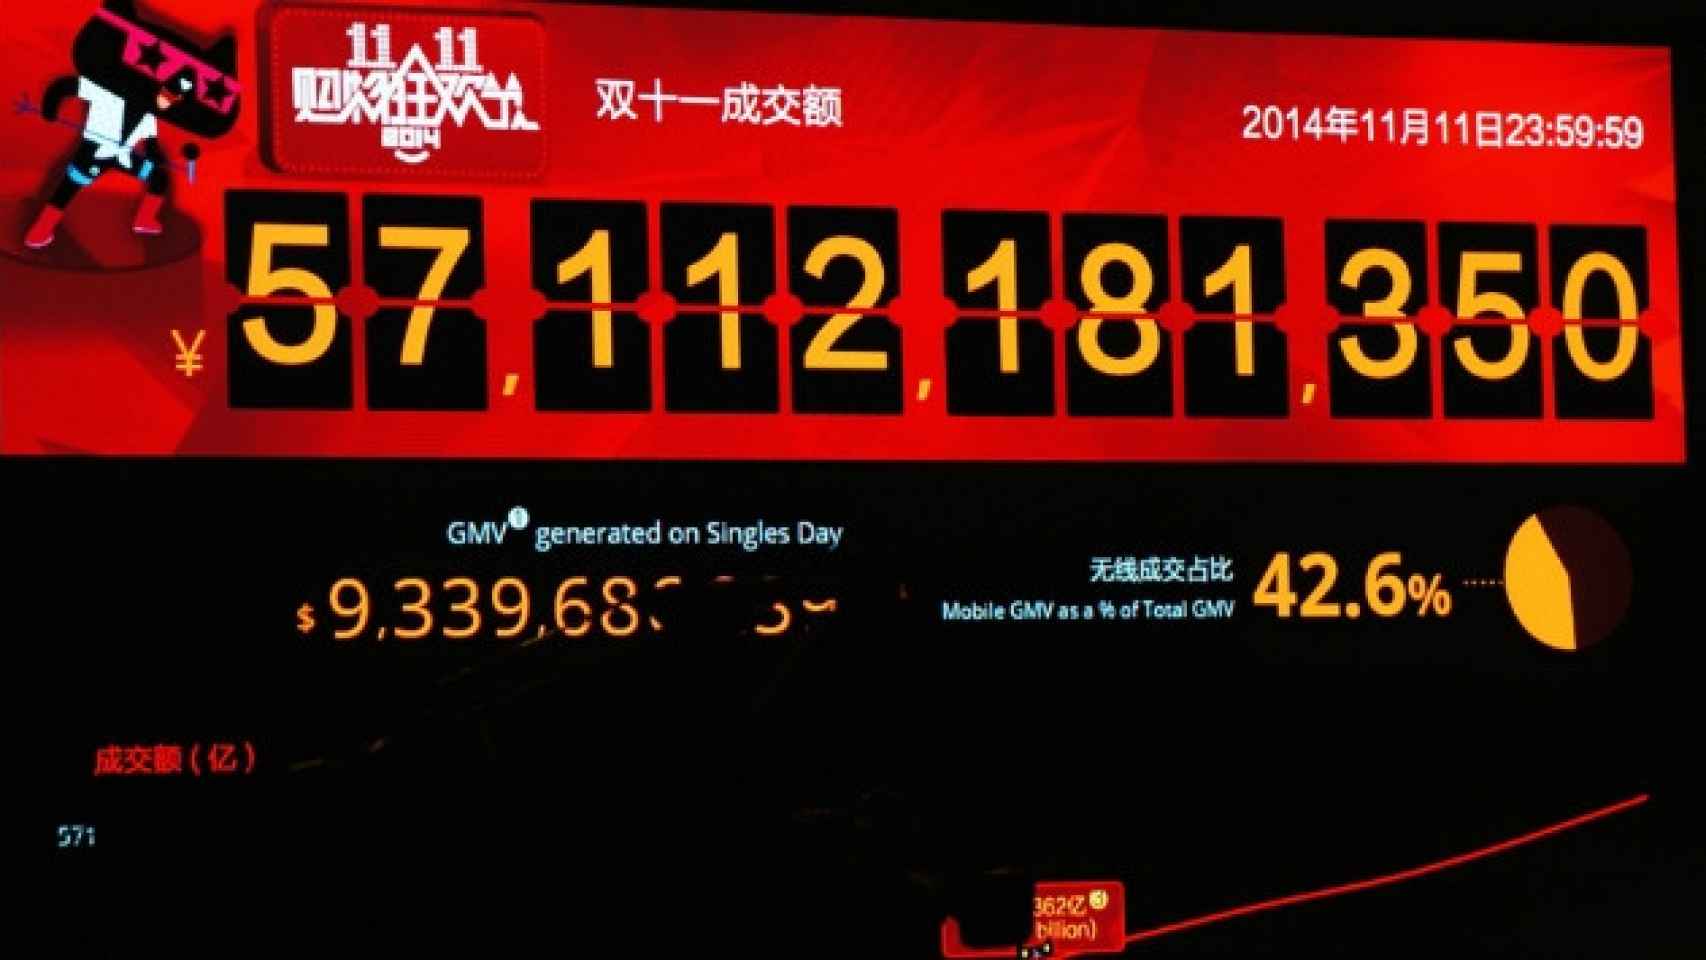 El portal Alibaba es el promotor del 'Single's Day' que tanto éxito tiene en Asia y Estados Unidos